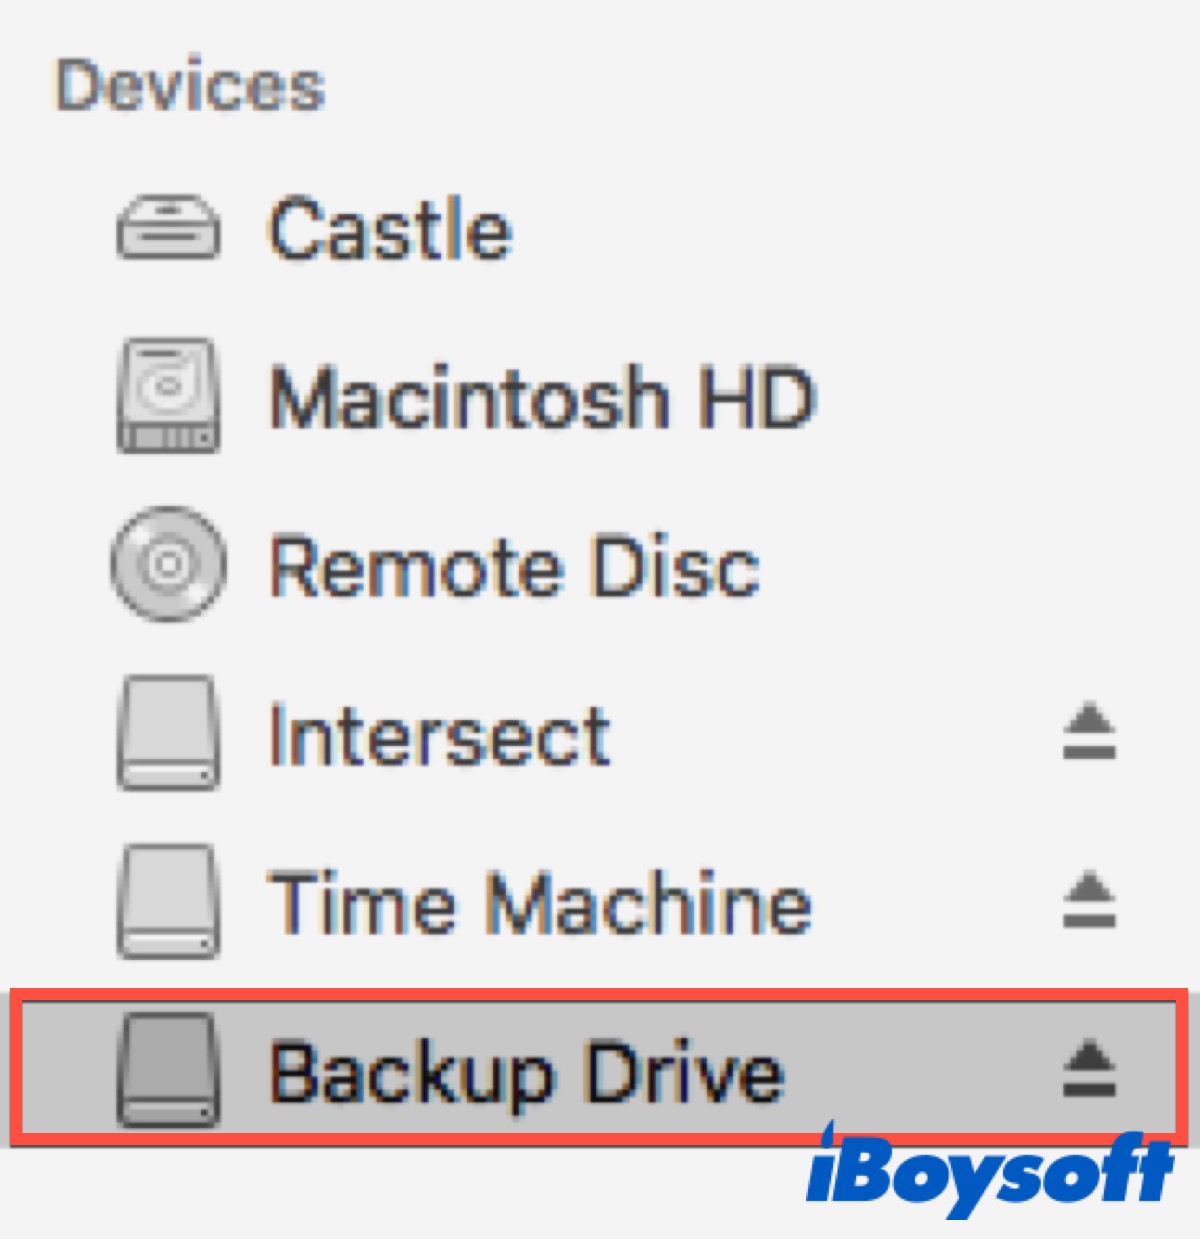 Verifique o disco de backup do Time Machine no Finder